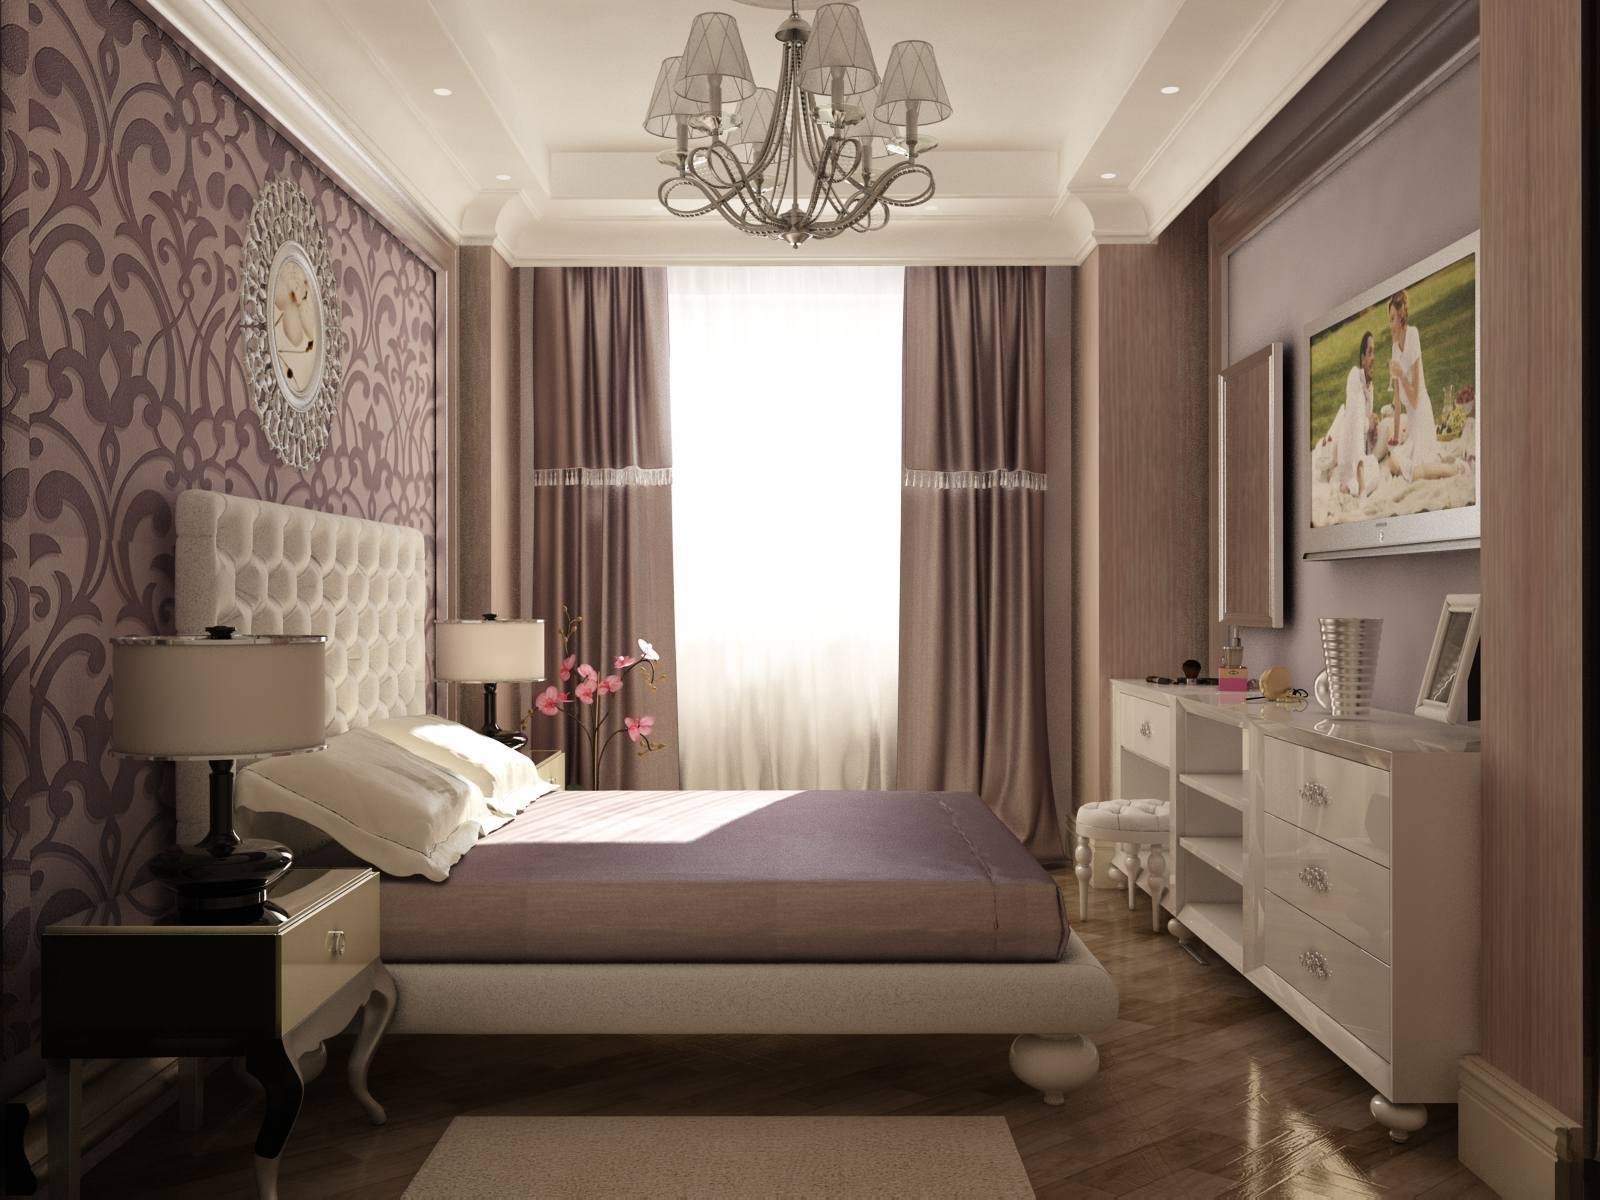 Prekrasan dizajn spavaće sobe - najbolje ideje za interijer za one koji odaberu udobnost, stil i udobnost